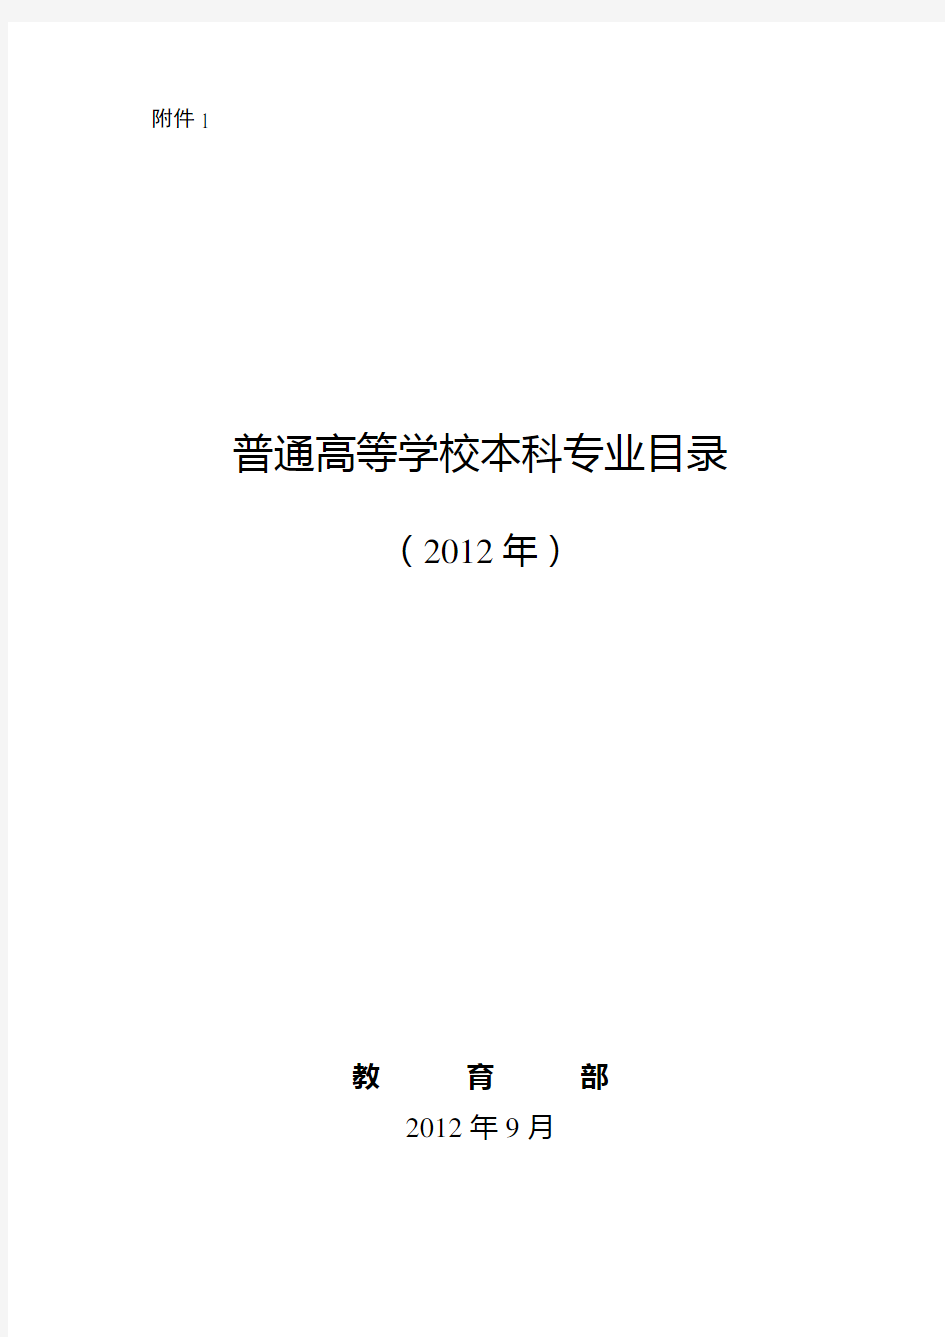 普通高等学校本科专业目录(2012年官方最新版)